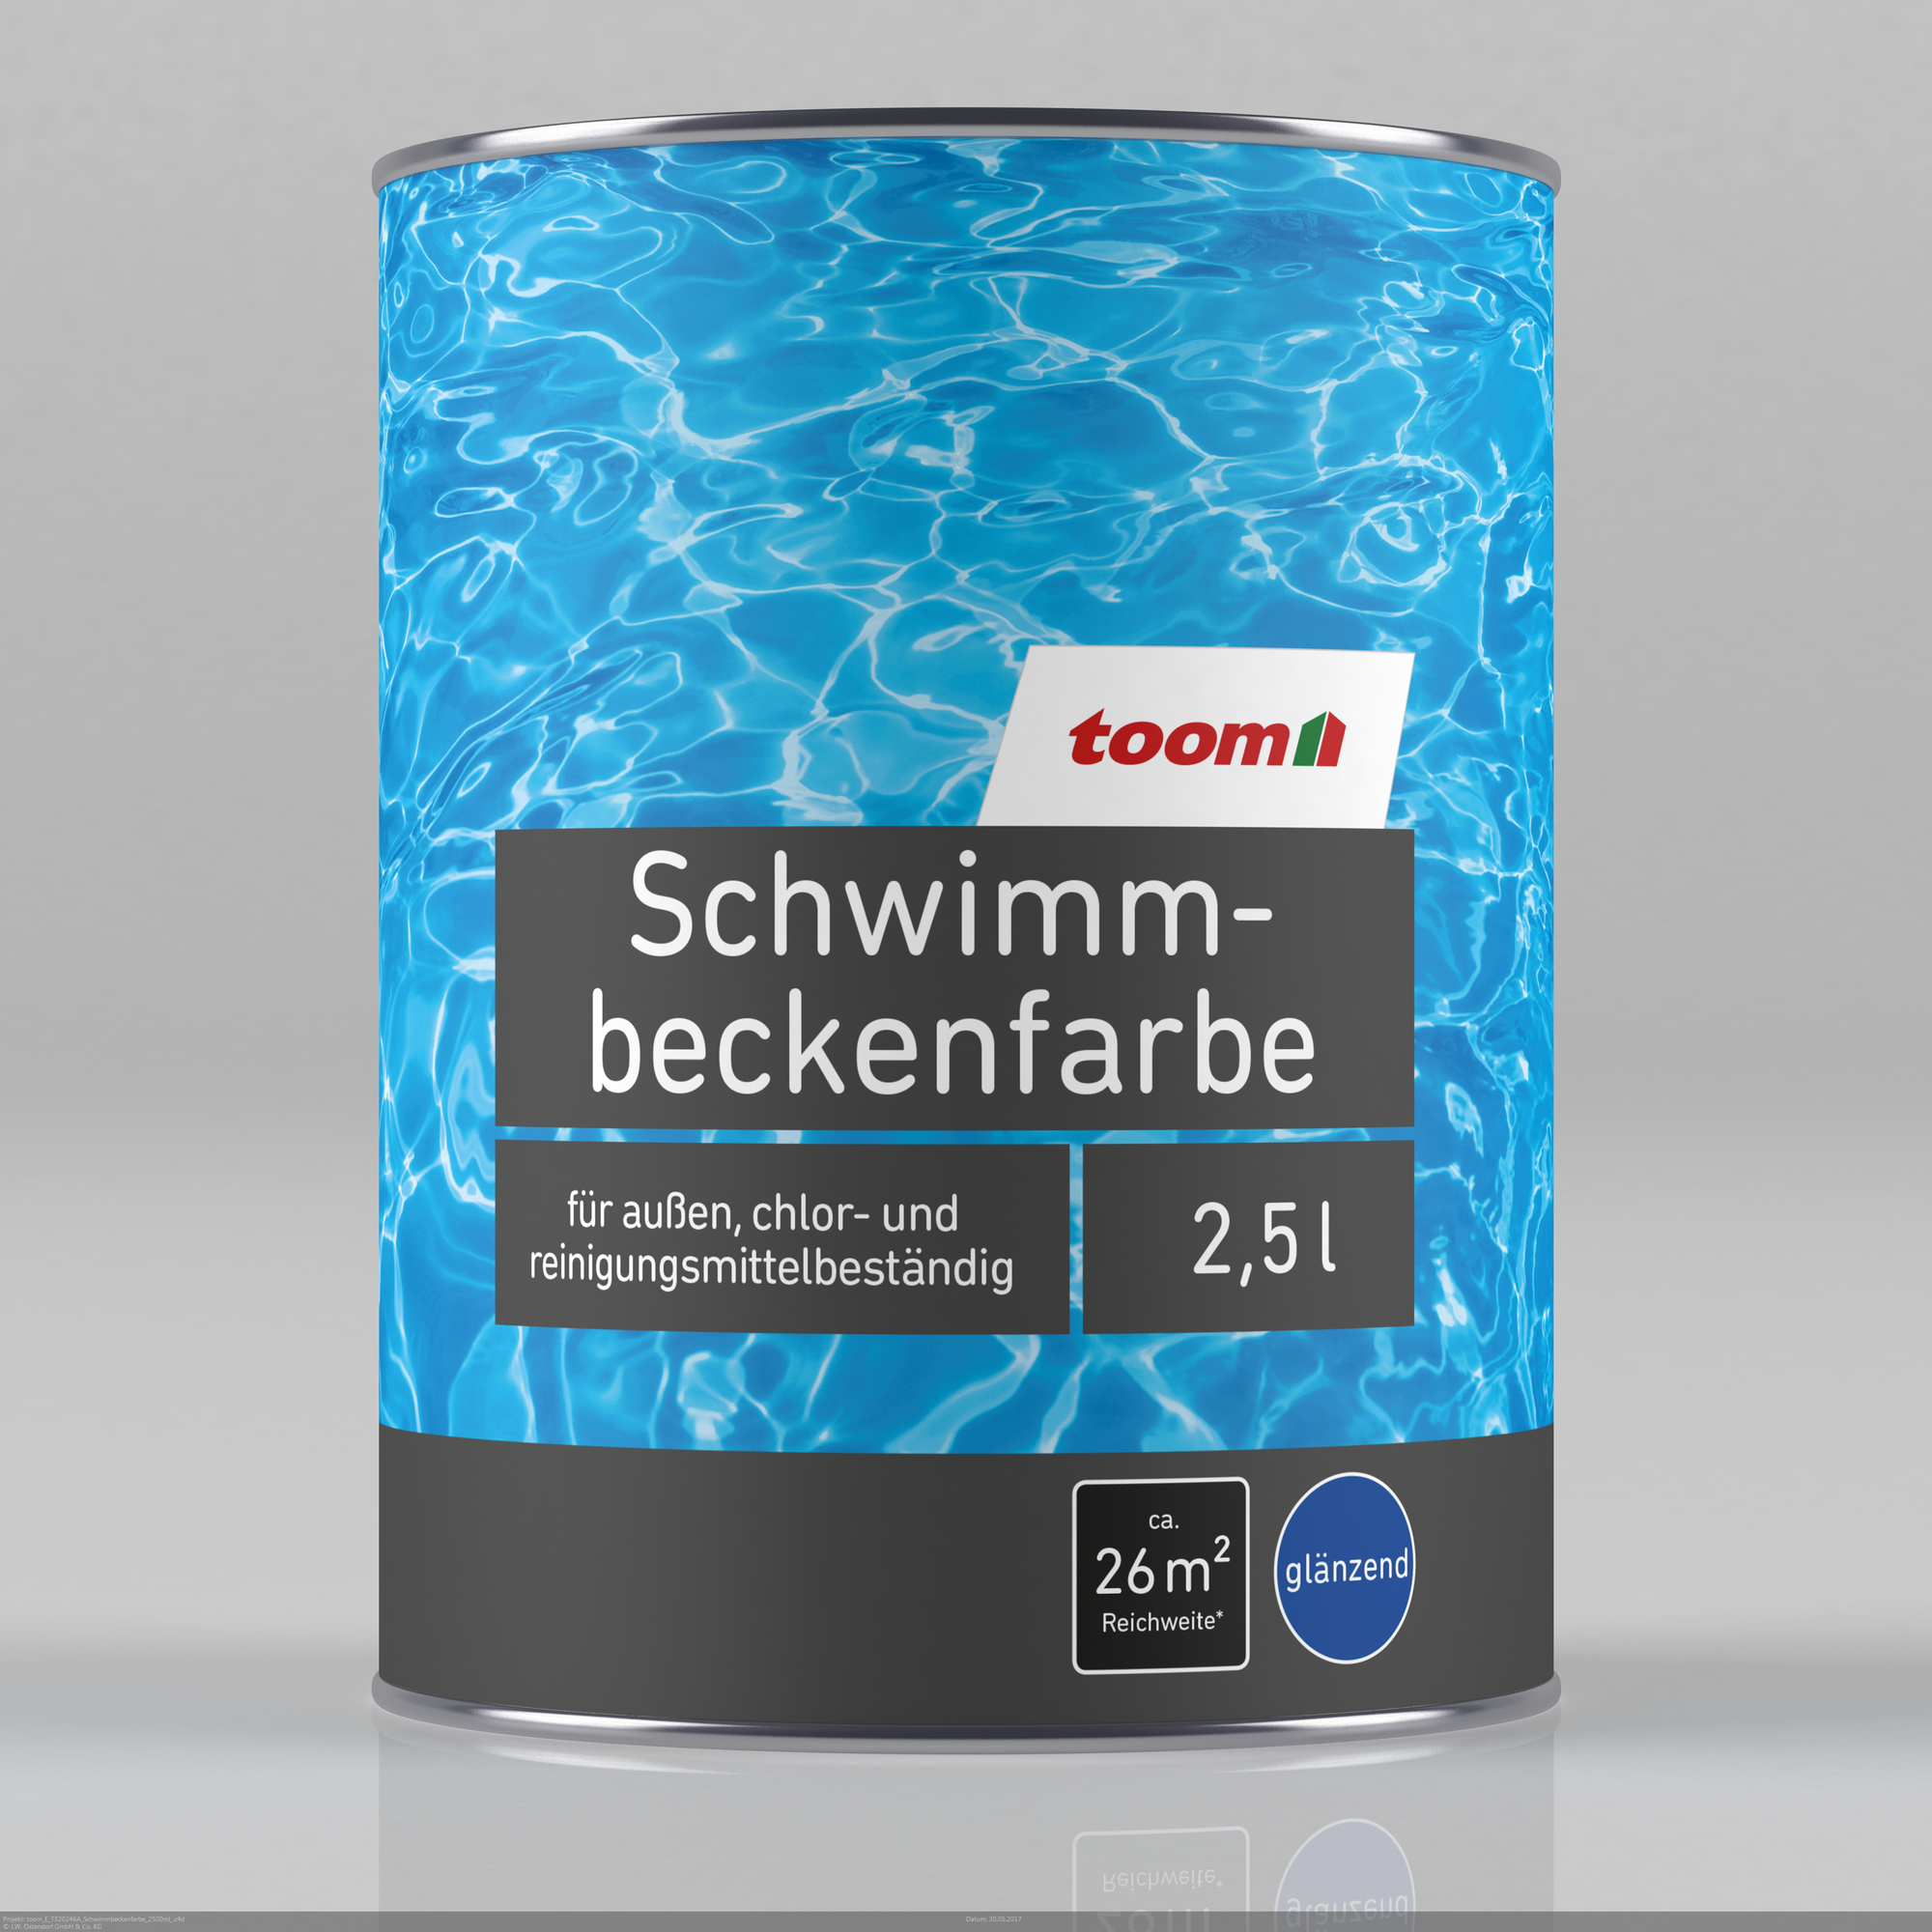 Schwimmbeckenfarbe lichtblau glänzend 2,5 l + product picture